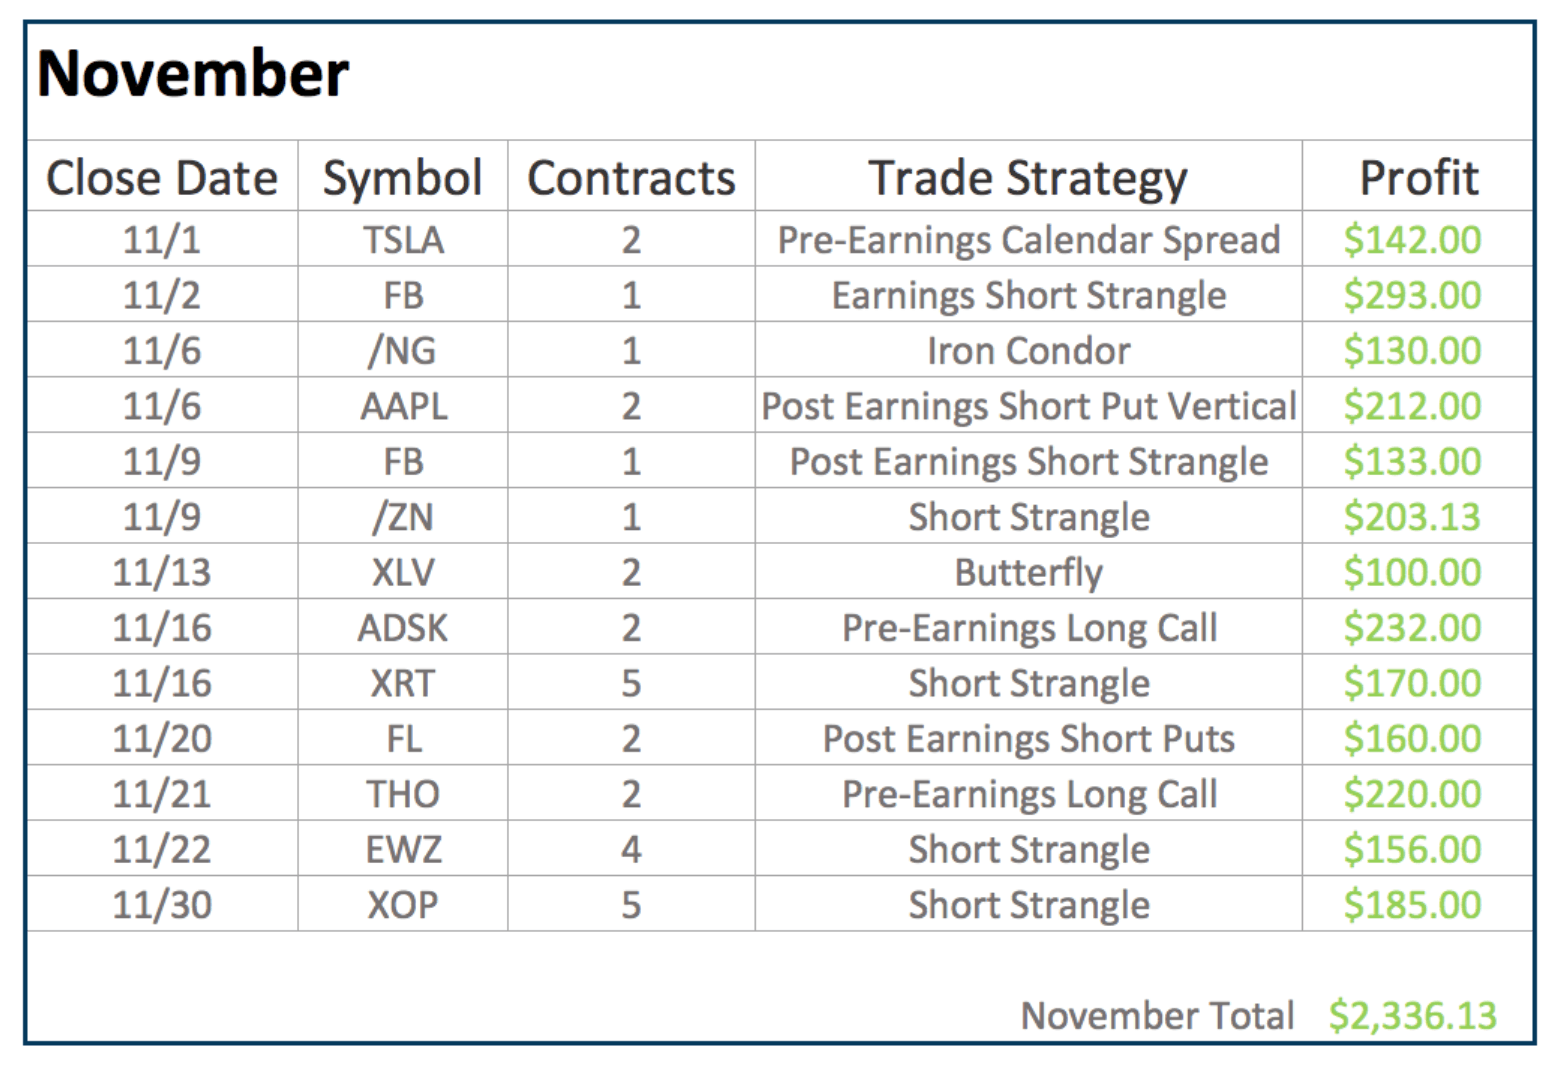 November Closed Trades